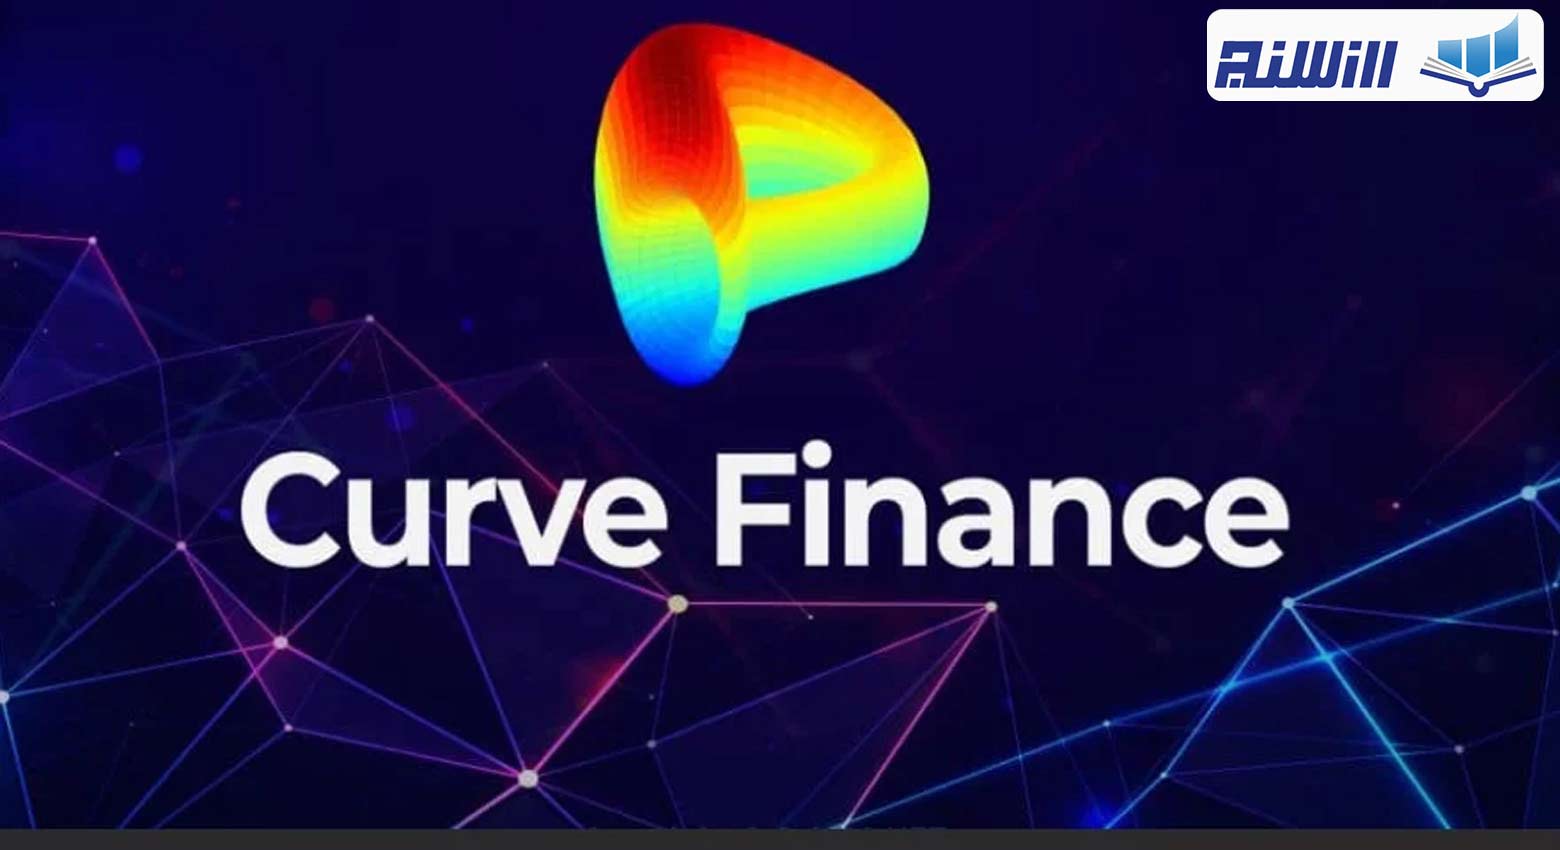 آموزش پلتفرم کرو فایننس (Curve Finance) ویدیوی آموزش استیک و تامین نقدینگی درکرو فایننس